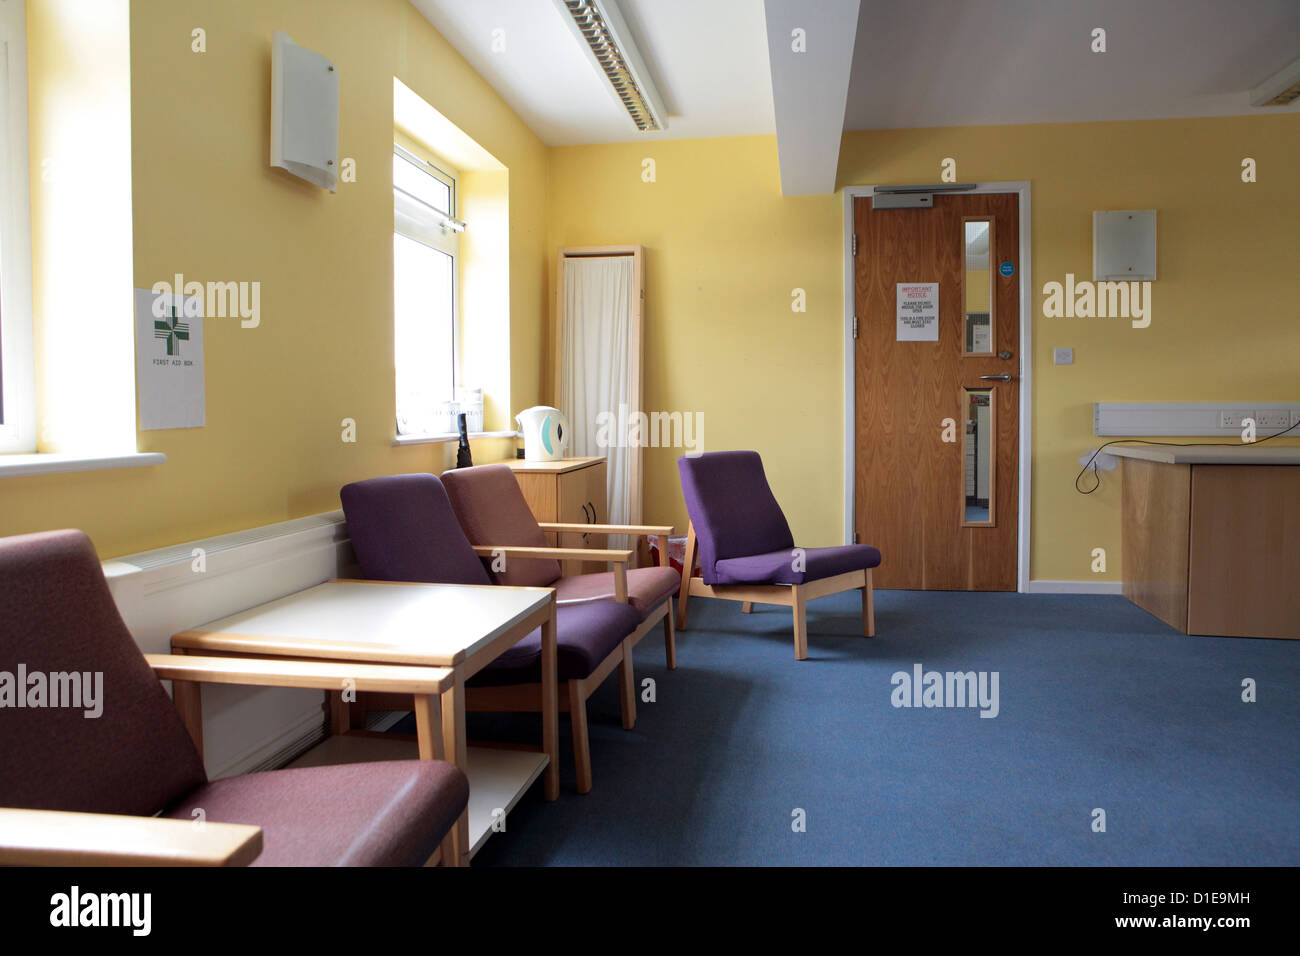 Office NHS vide, une salle d'attente, d'un établissement institutionnel, fermé en raison d'austérité, England, UK Banque D'Images